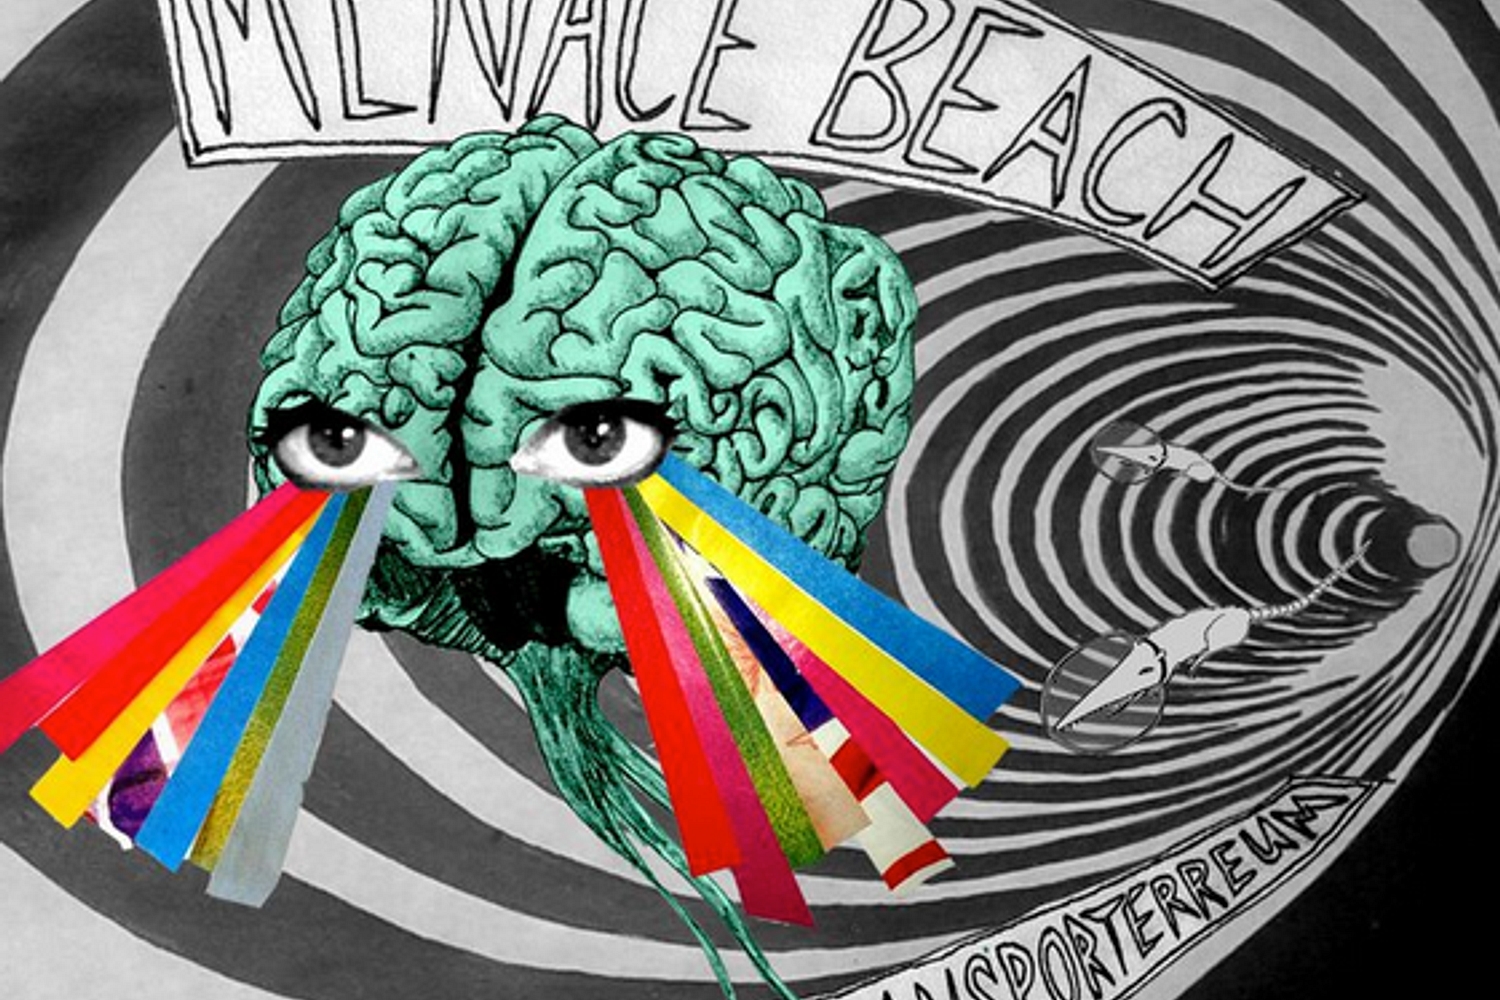 Menace Beach - Super Transporterreum EP